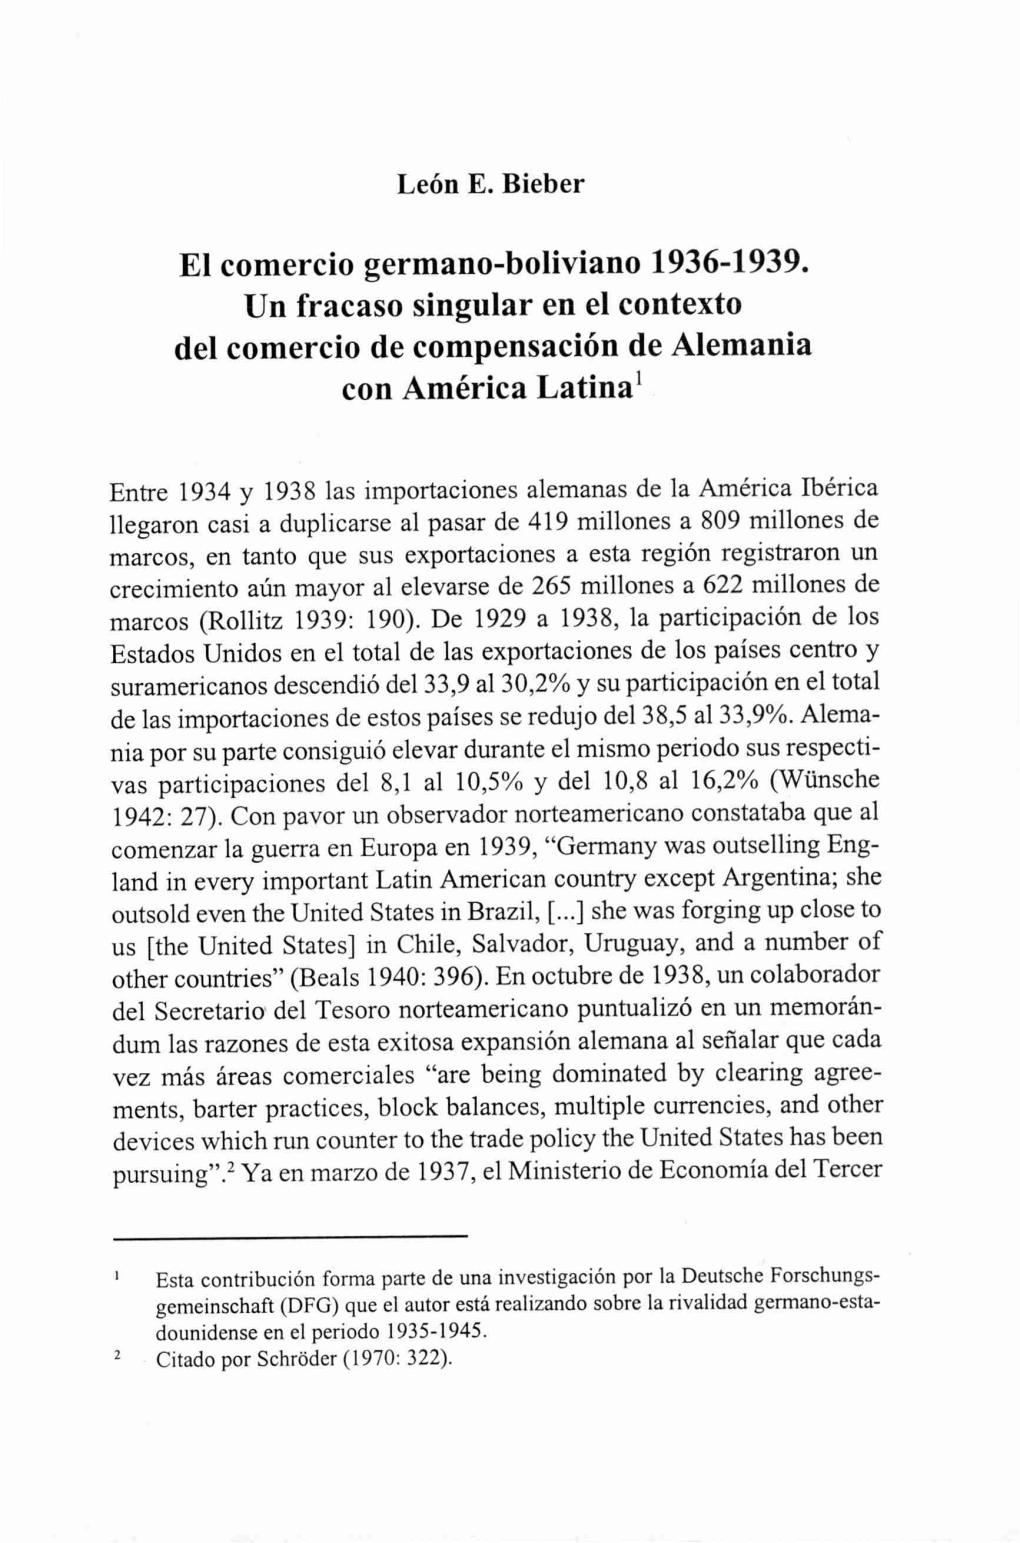 El Comercio Germano-Boliviano 1936-1939. Un Fracaso Singular En El Contexto Del Comercio De Compensación De Alemania Con América Latina1